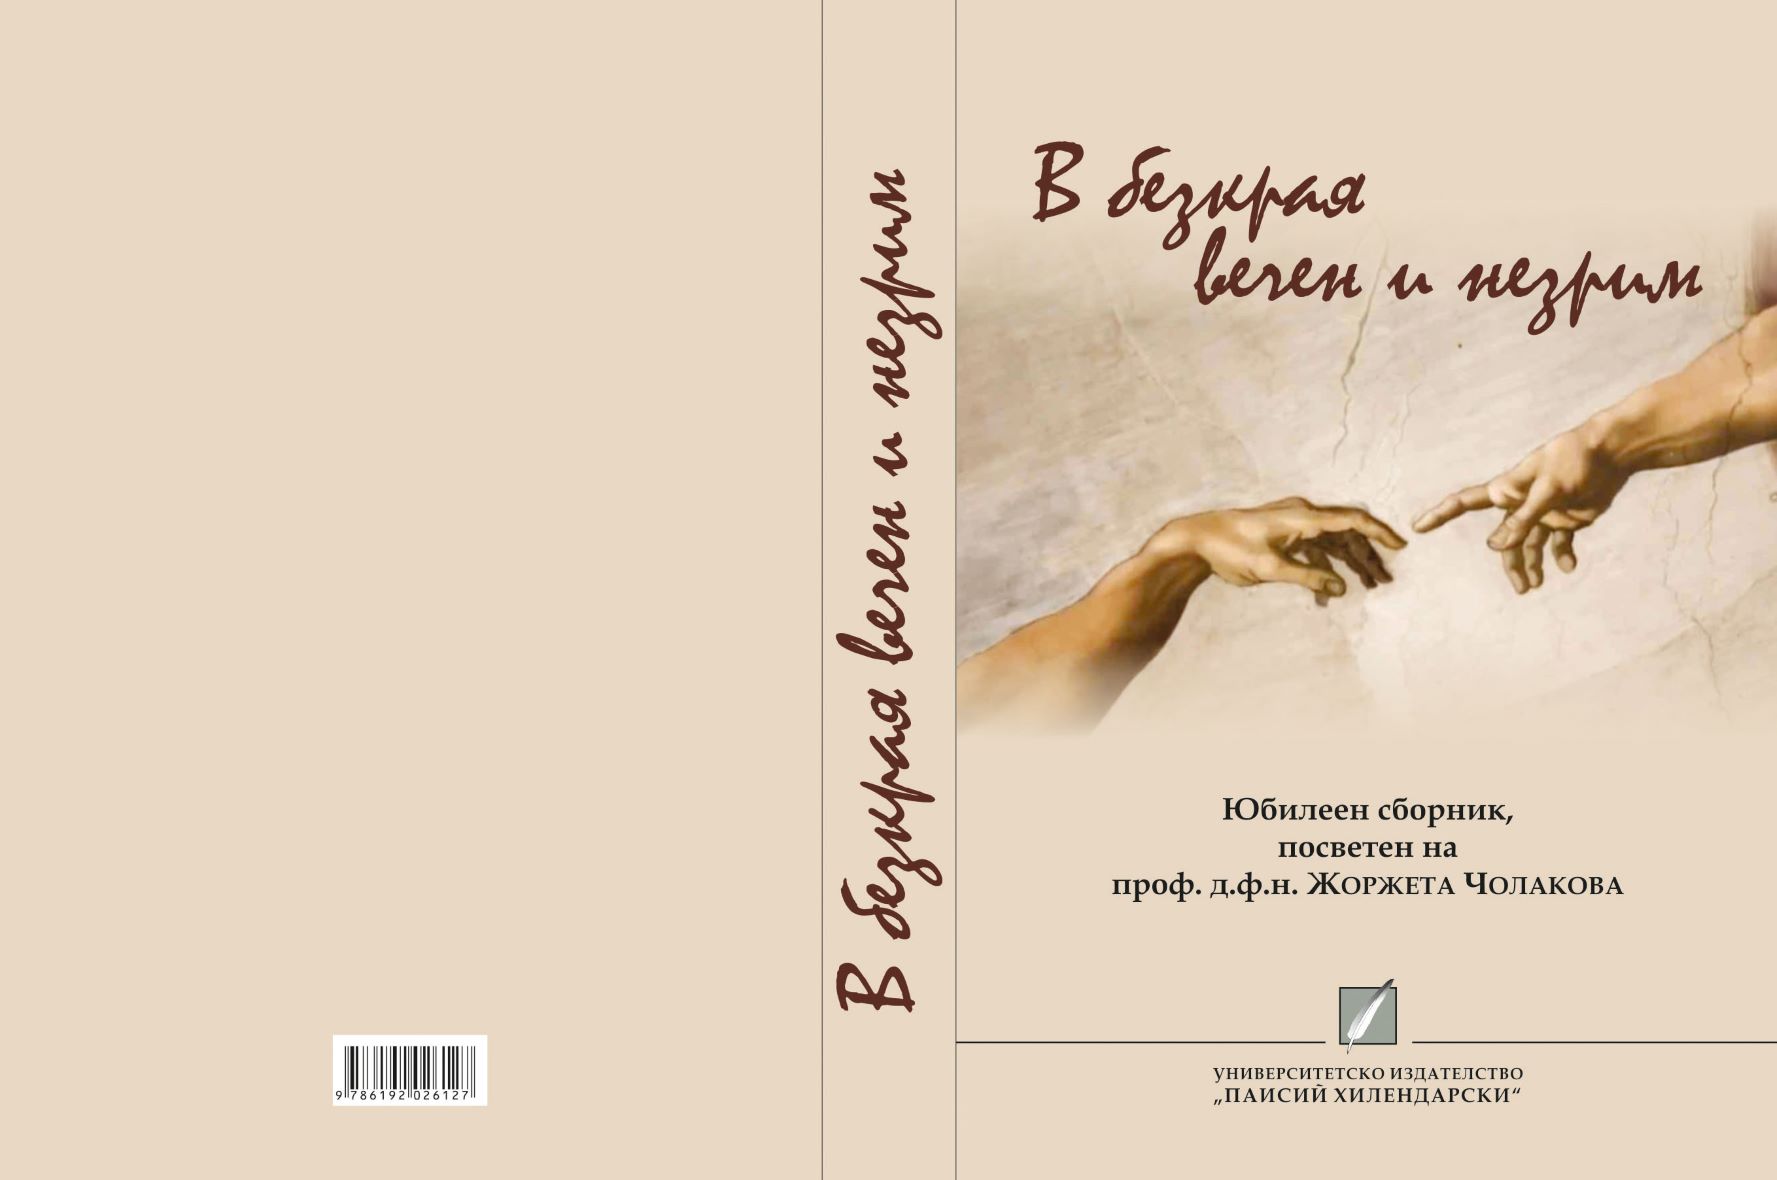 Паремиологични съответствия в превода на романи от испански на български език